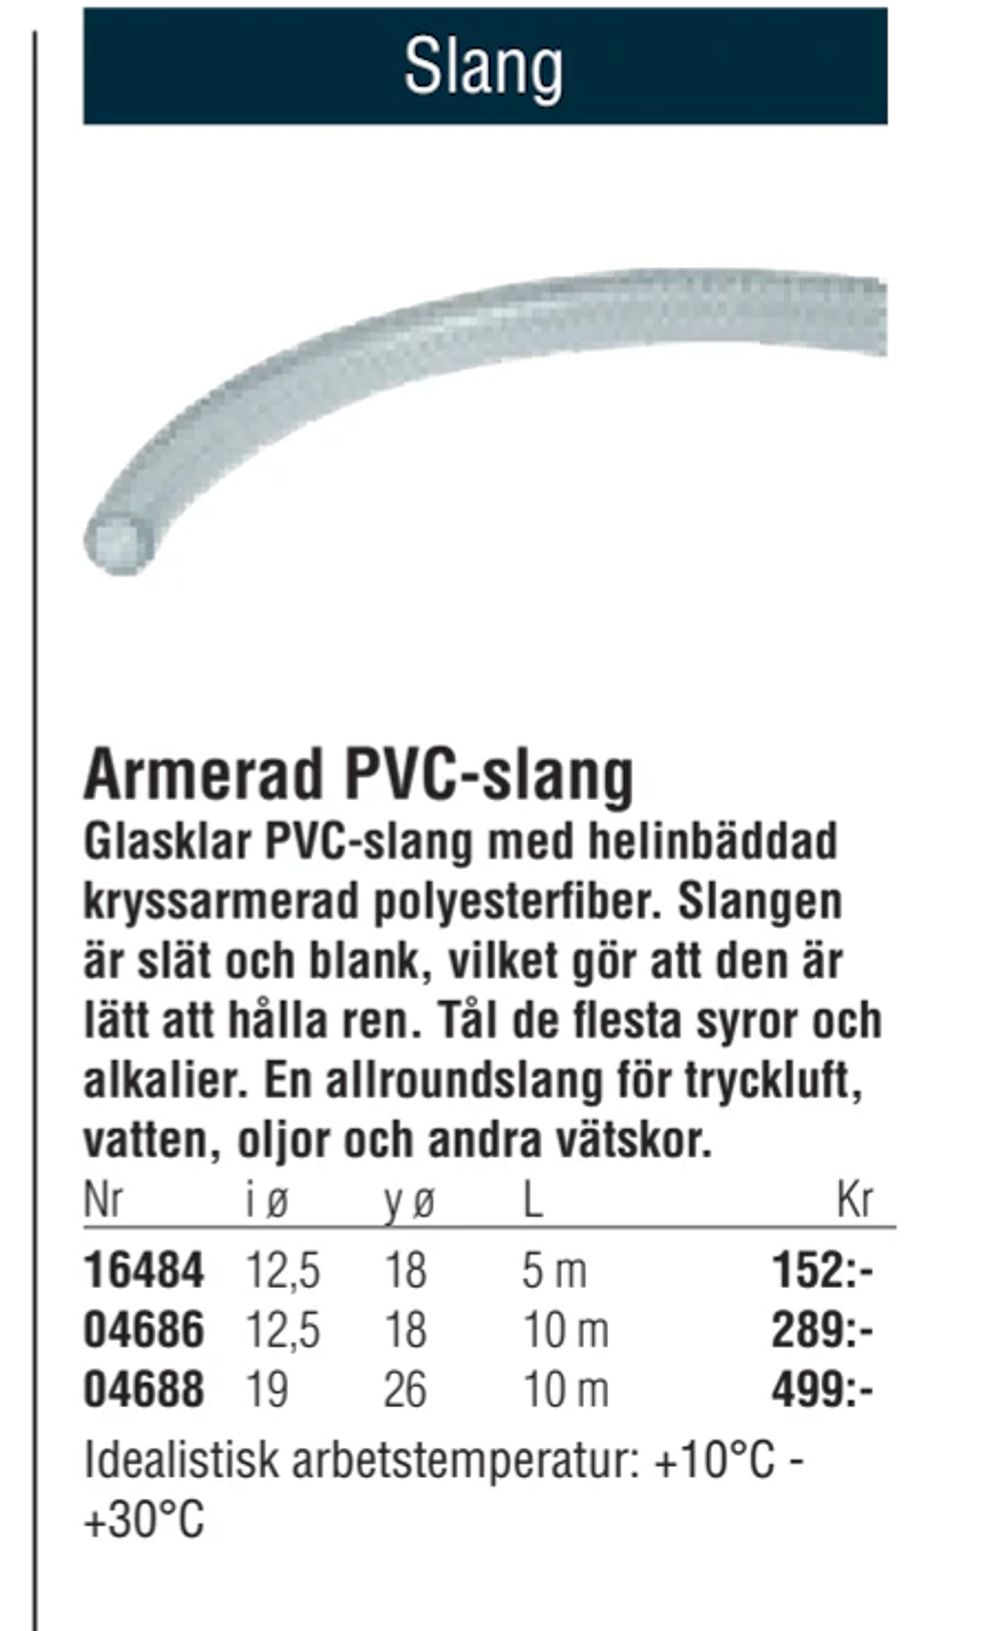 Erbjudanden på Armerad PVC-slang från Erlandsons Brygga för 152 kr